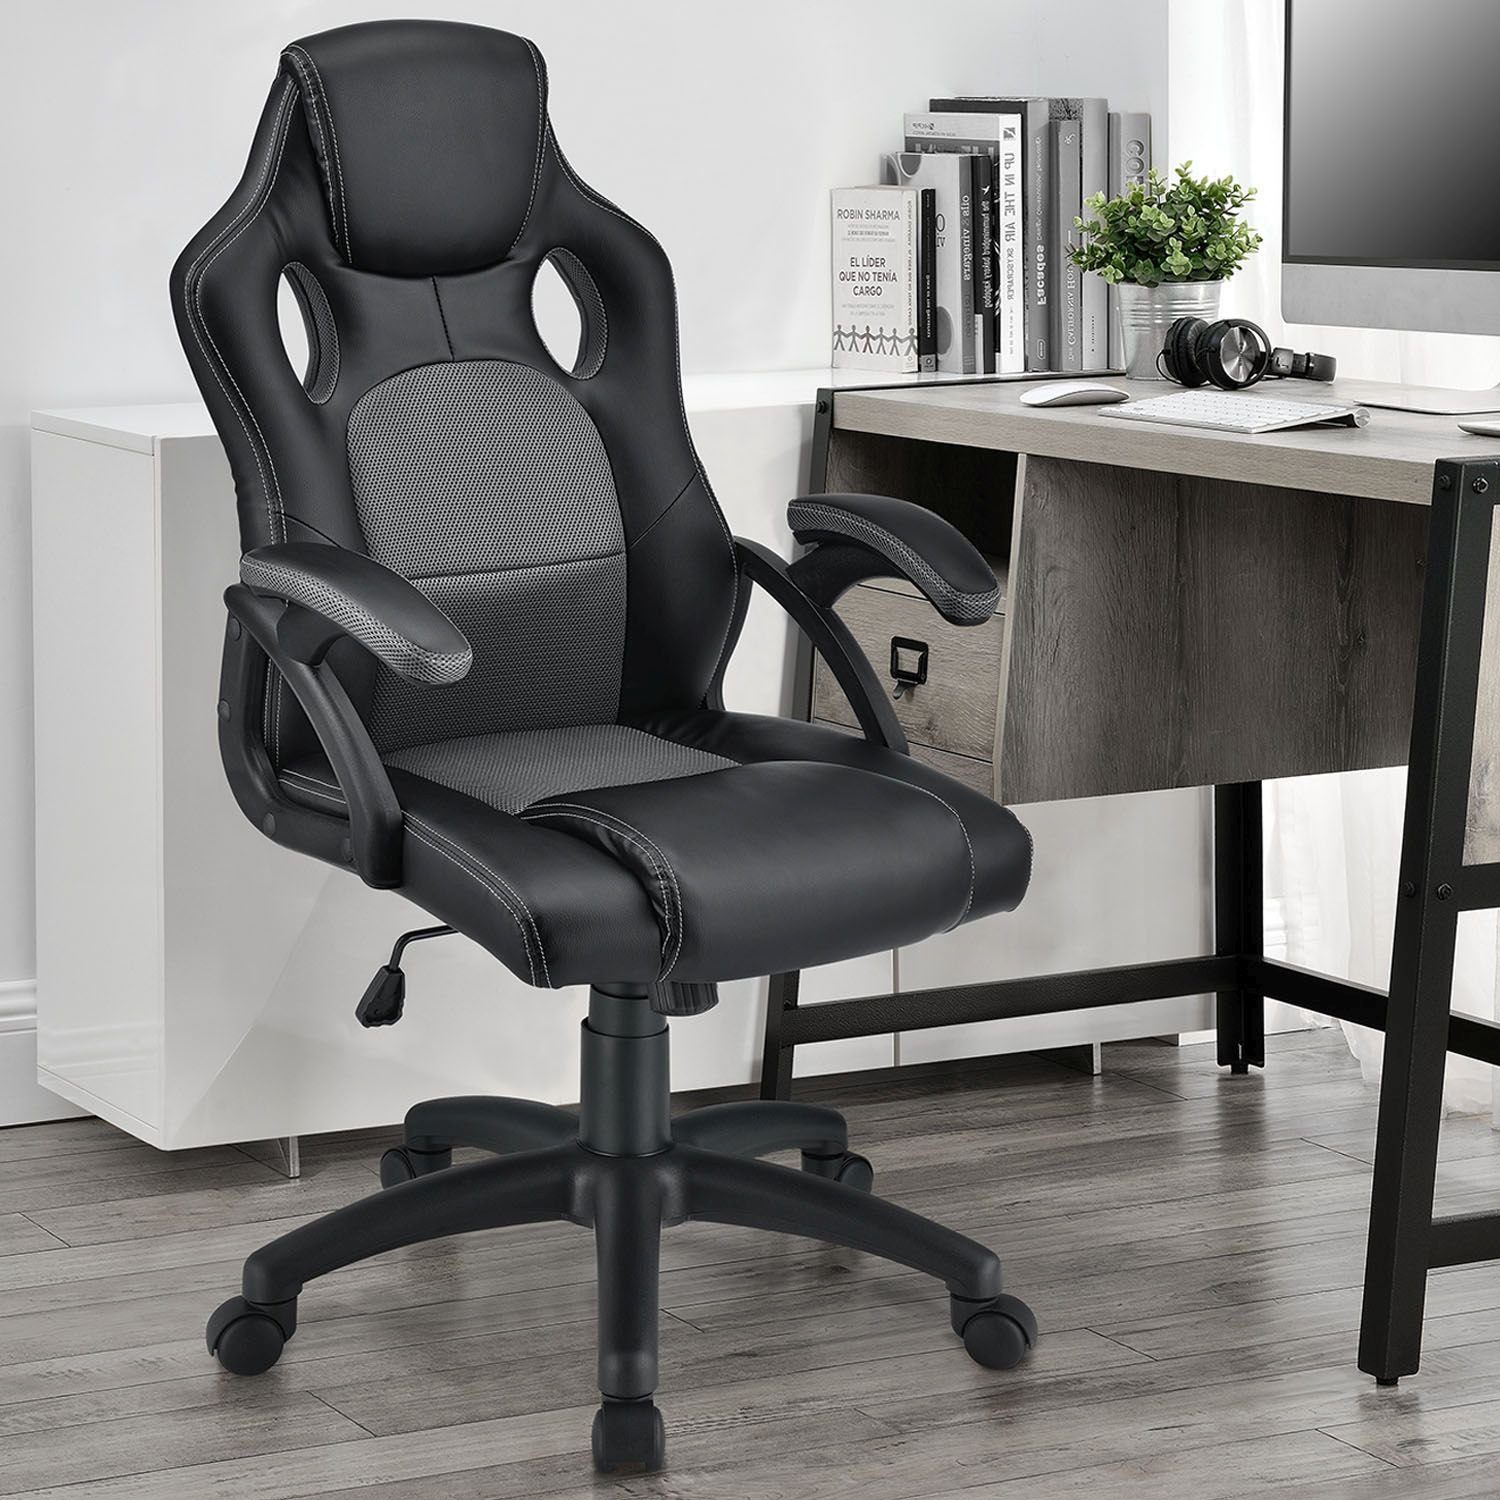 Rückenlehne Grau Sitzfläche, kippbar Montreal, Juskys Ergonomisch Schwarz, geformte und Sitzfläche Gaming-Stuhl